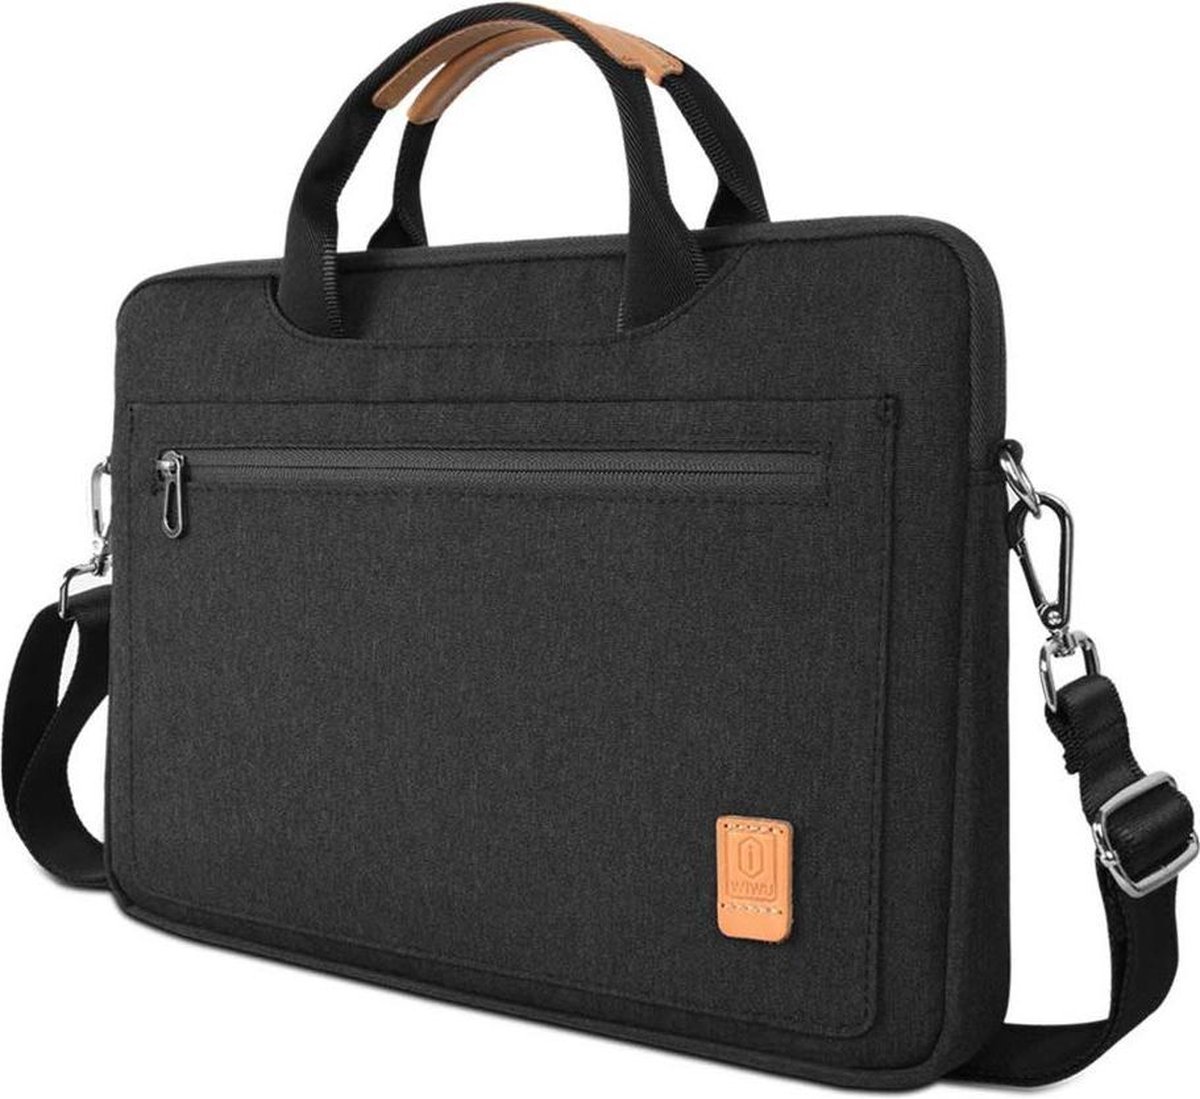 Laptoptas geschikt voor Asus Zenbook - 13.3 inch Pioneer Waterafstotende laptoptas met schouderband - Zwart